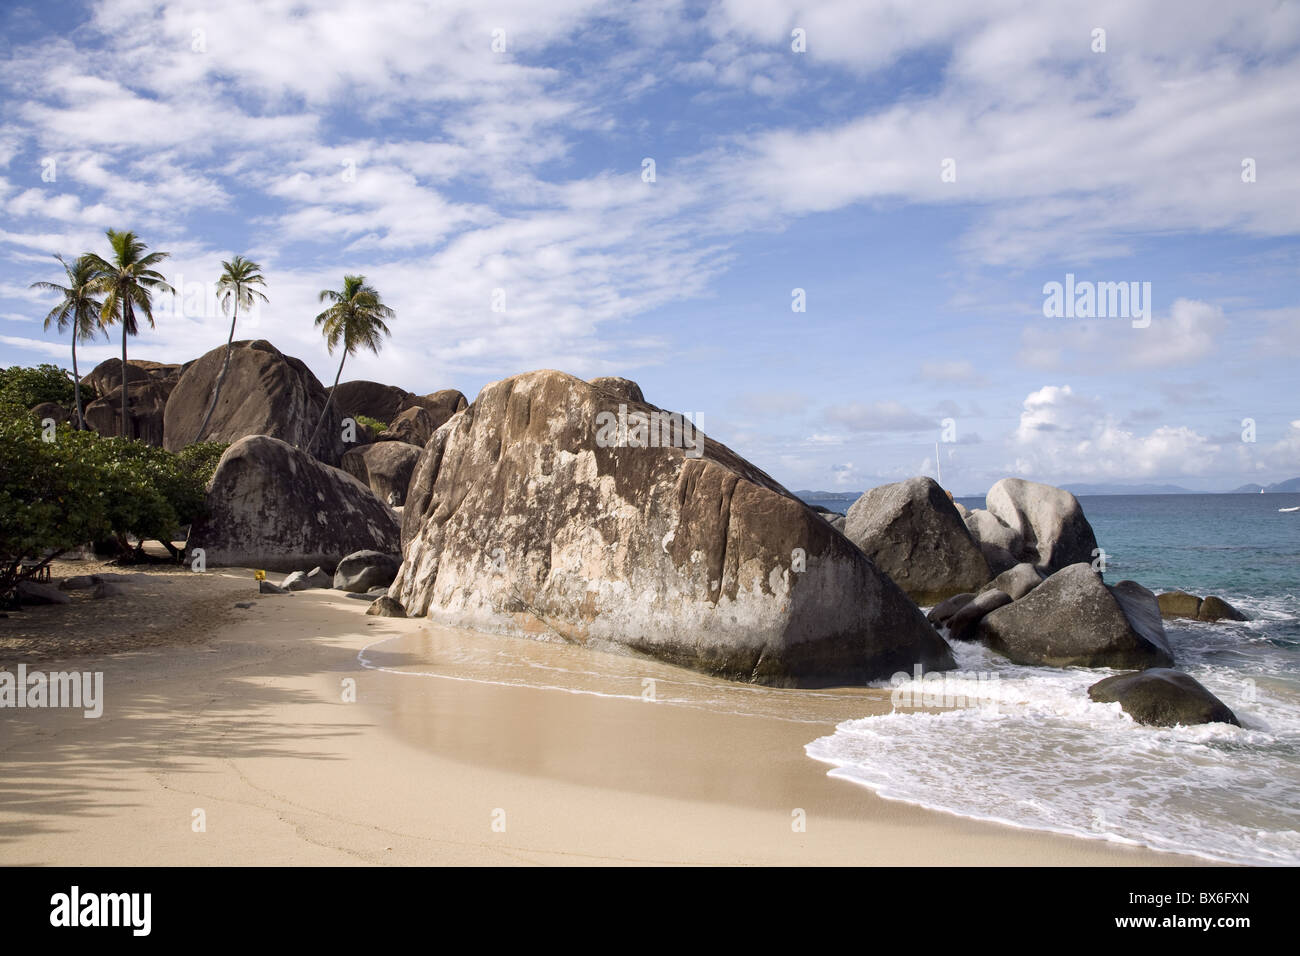 Les bains, grande les rochers de granit, Virgin Gorda, îles Vierges britanniques, Antilles, Caraïbes, Amérique Centrale Banque D'Images